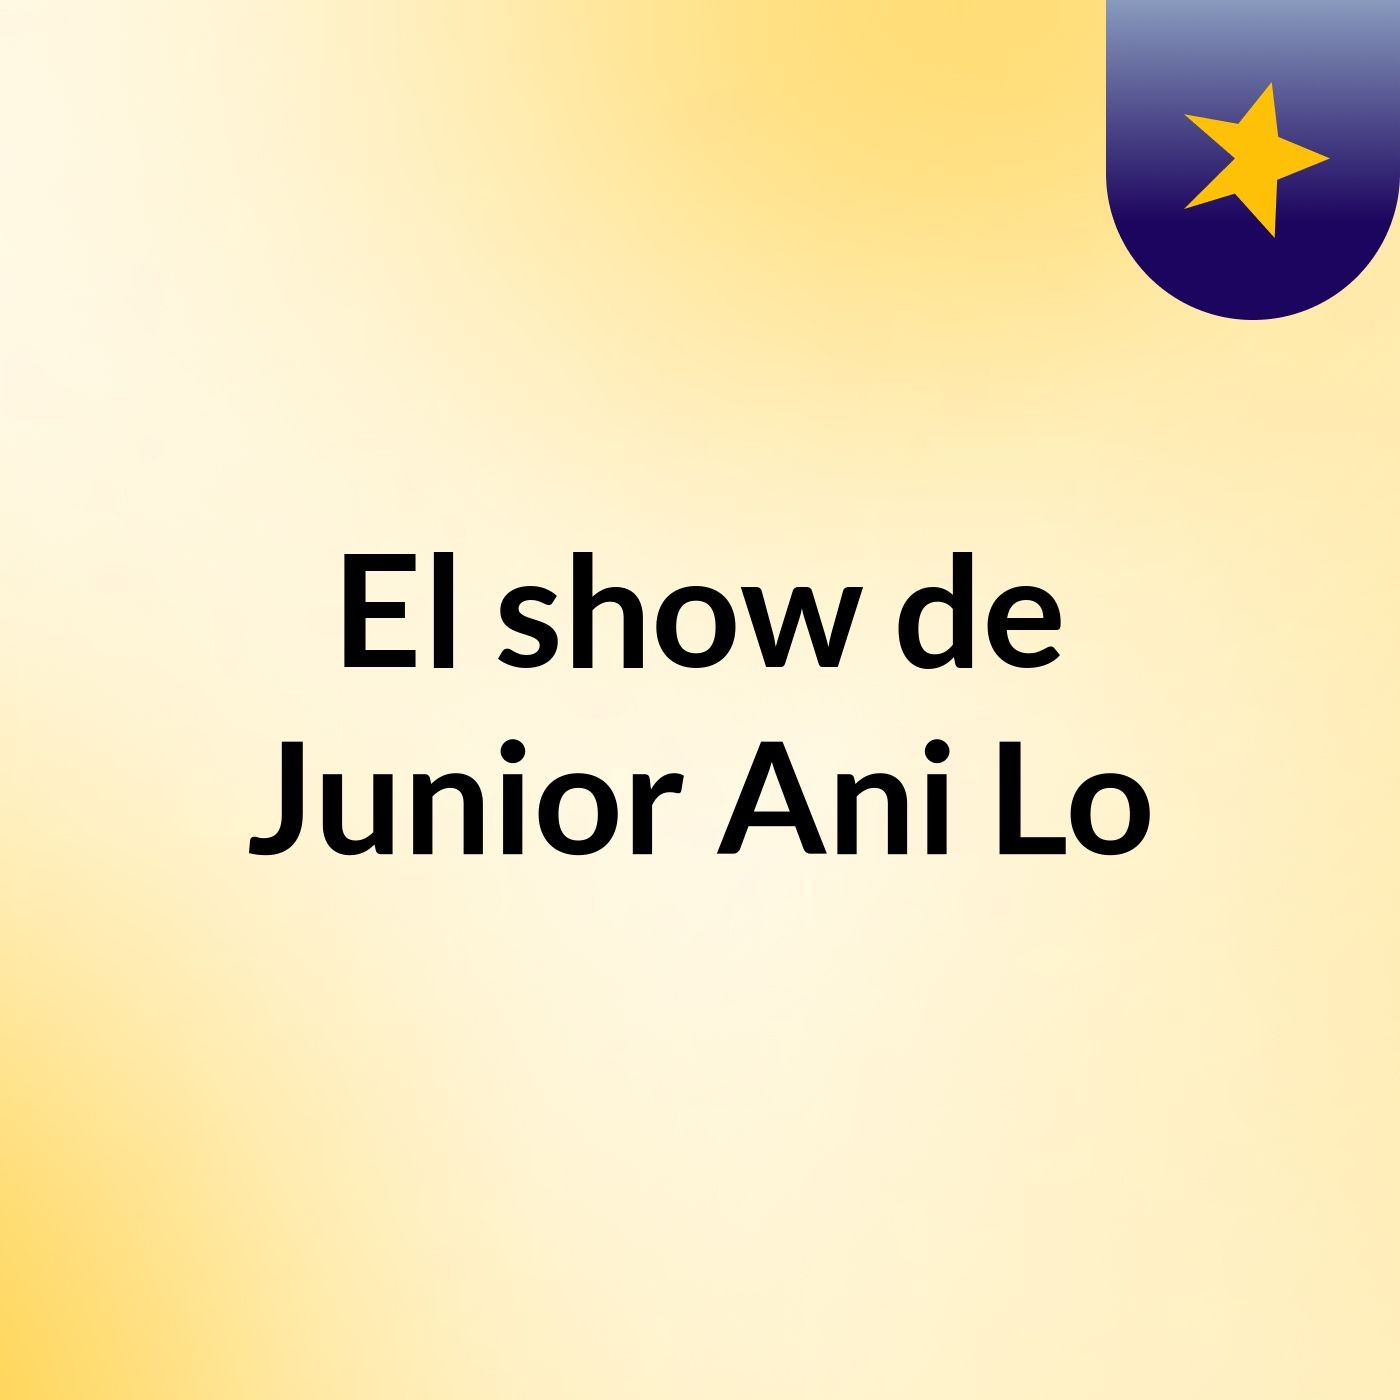 Episodio 2 - El show de Junior Ani Lo